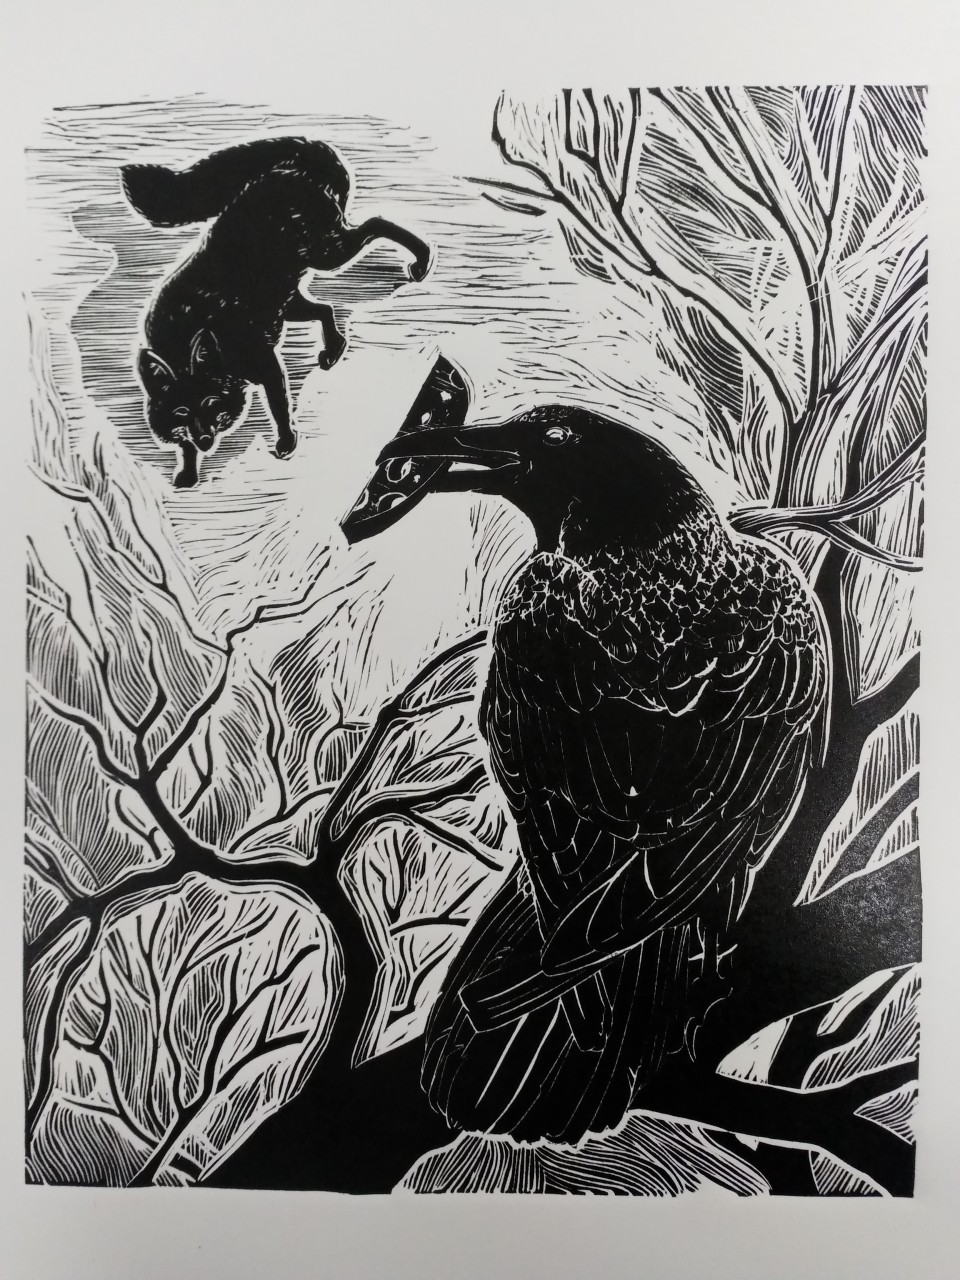 Иллюстрация к басне И. А. Крылова "Ворона и лисица"